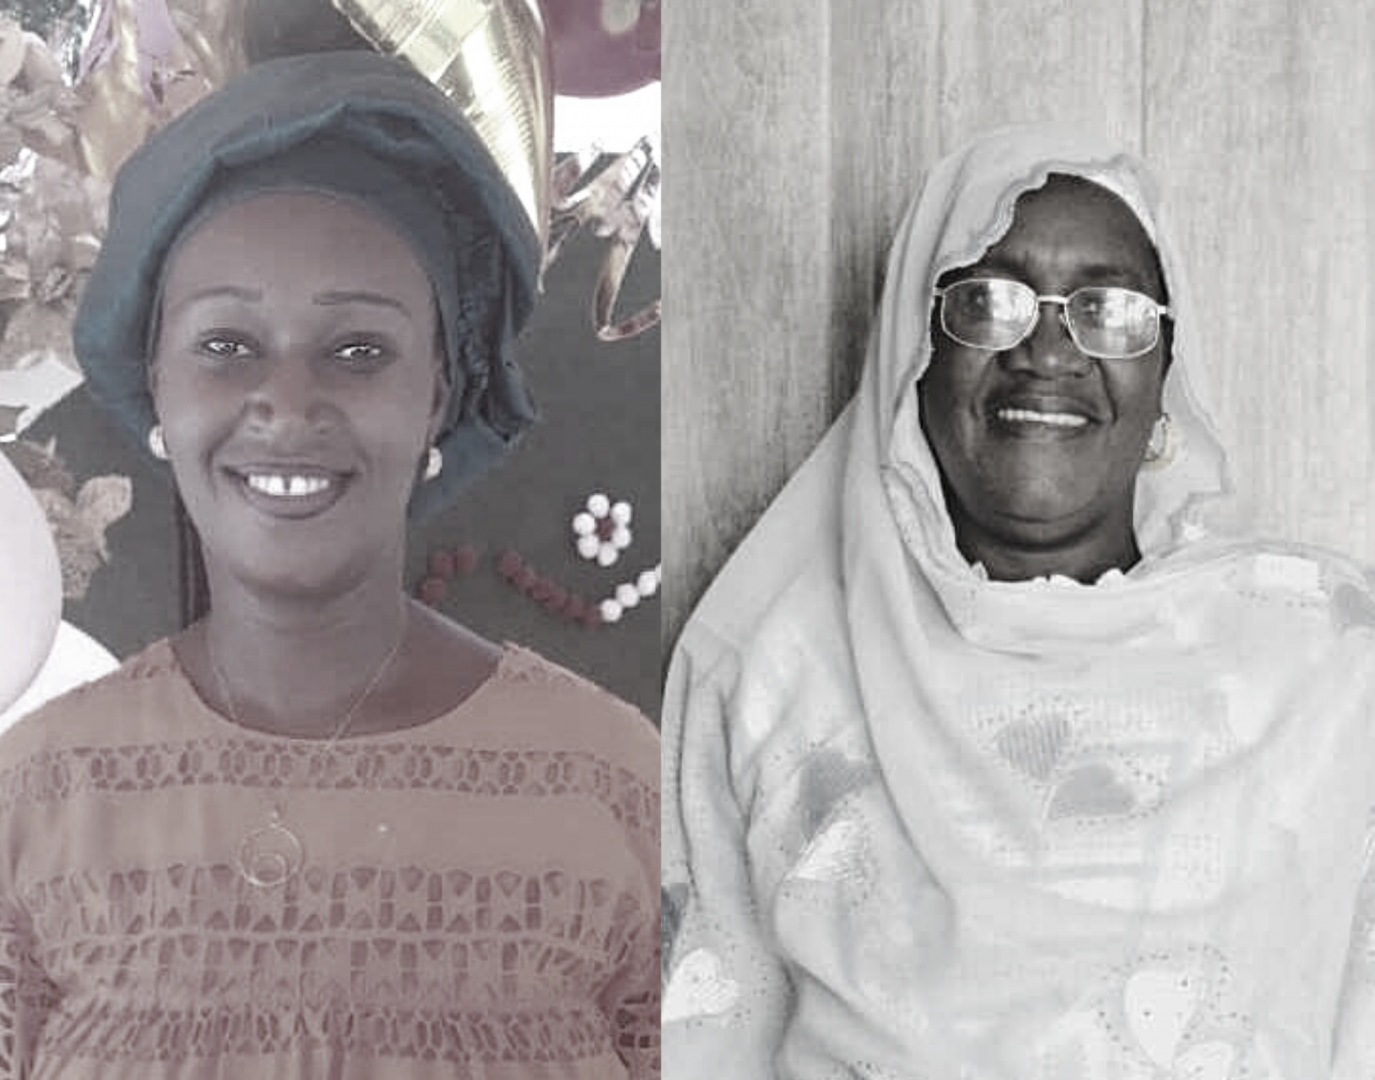 Aitta Kébé et Maimouna Tamba luttent contre la violence basée sur le genre au Sénégal